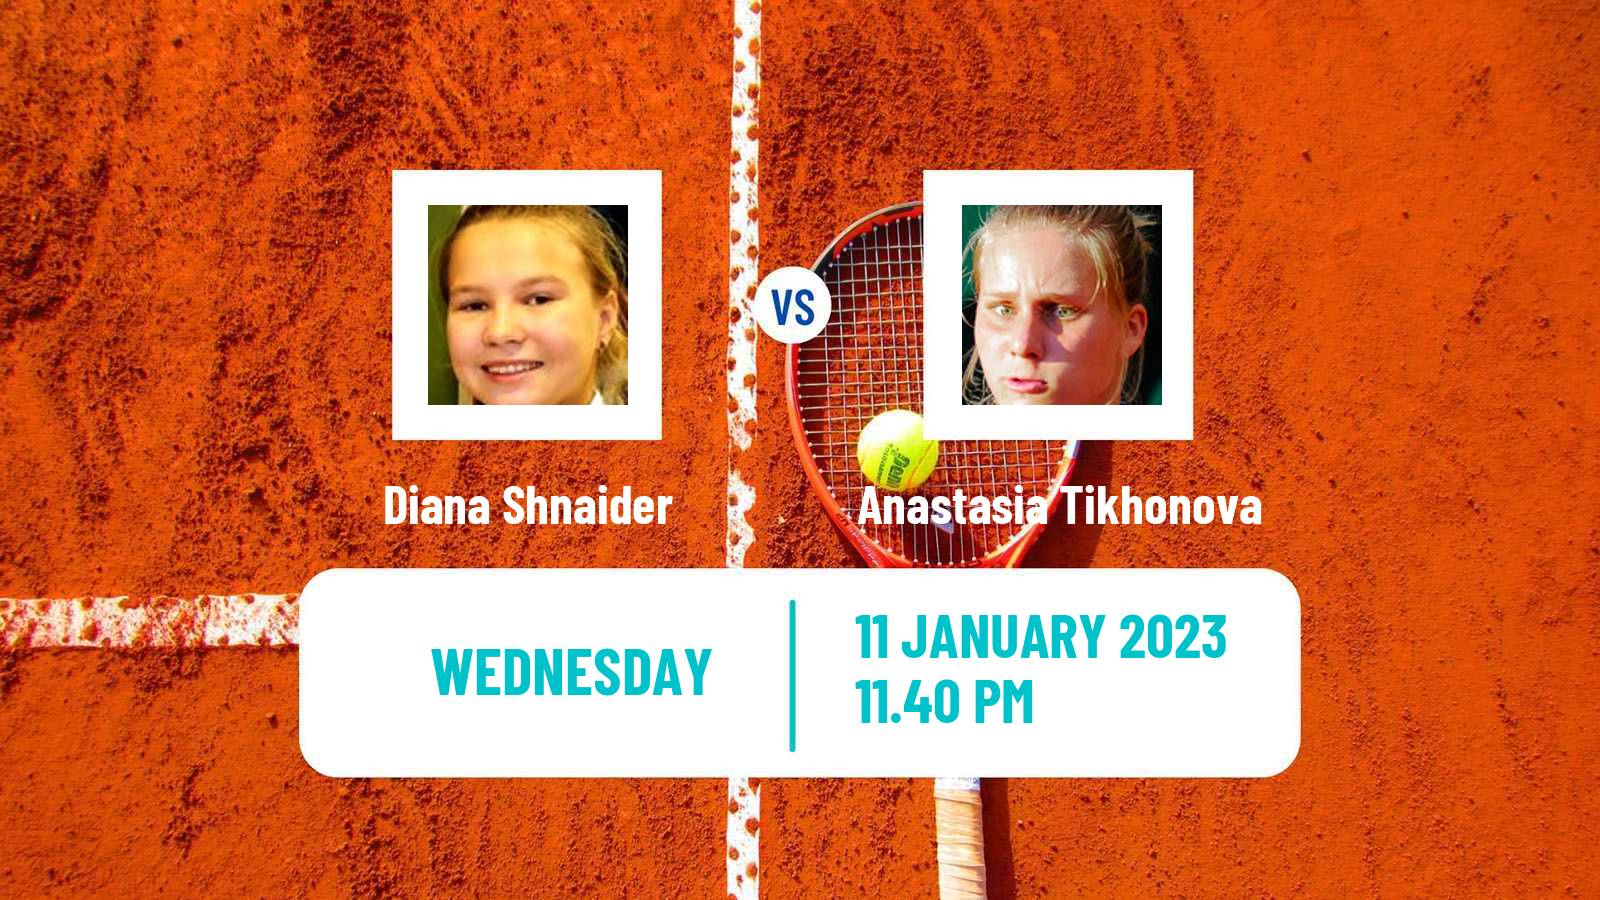 Tennis WTA Australian Open Diana Shnaider - Anastasia Tikhonova